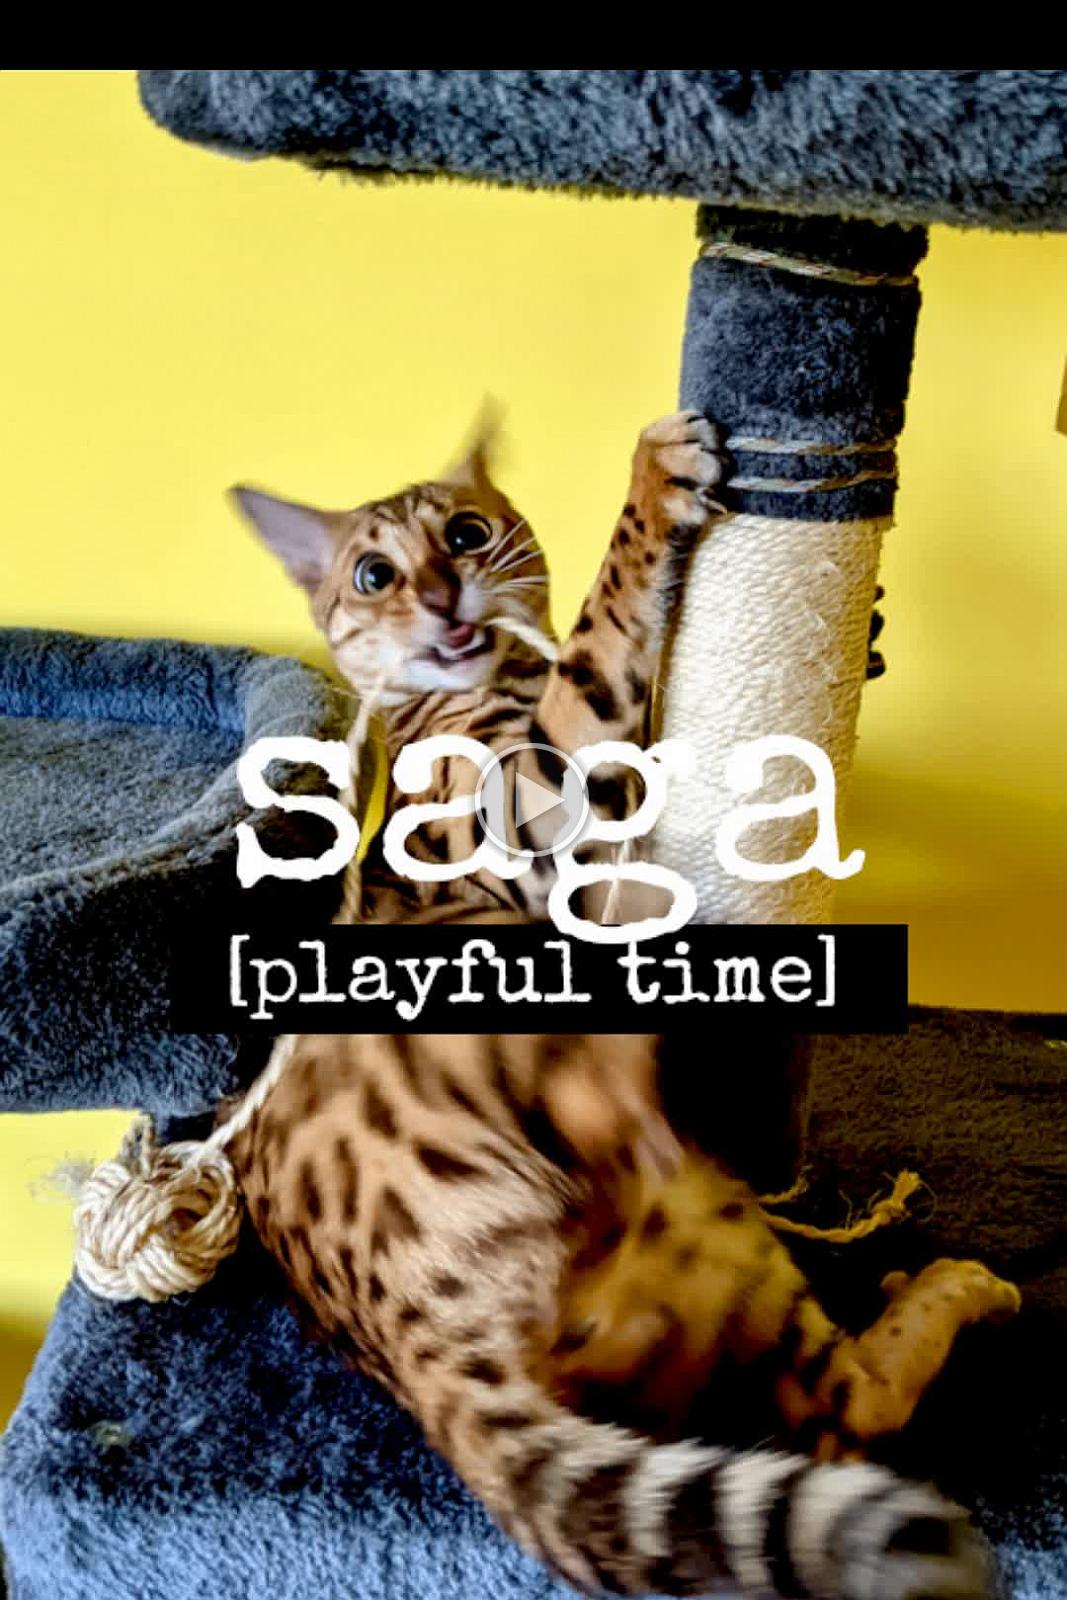 Saga - playful time 2021